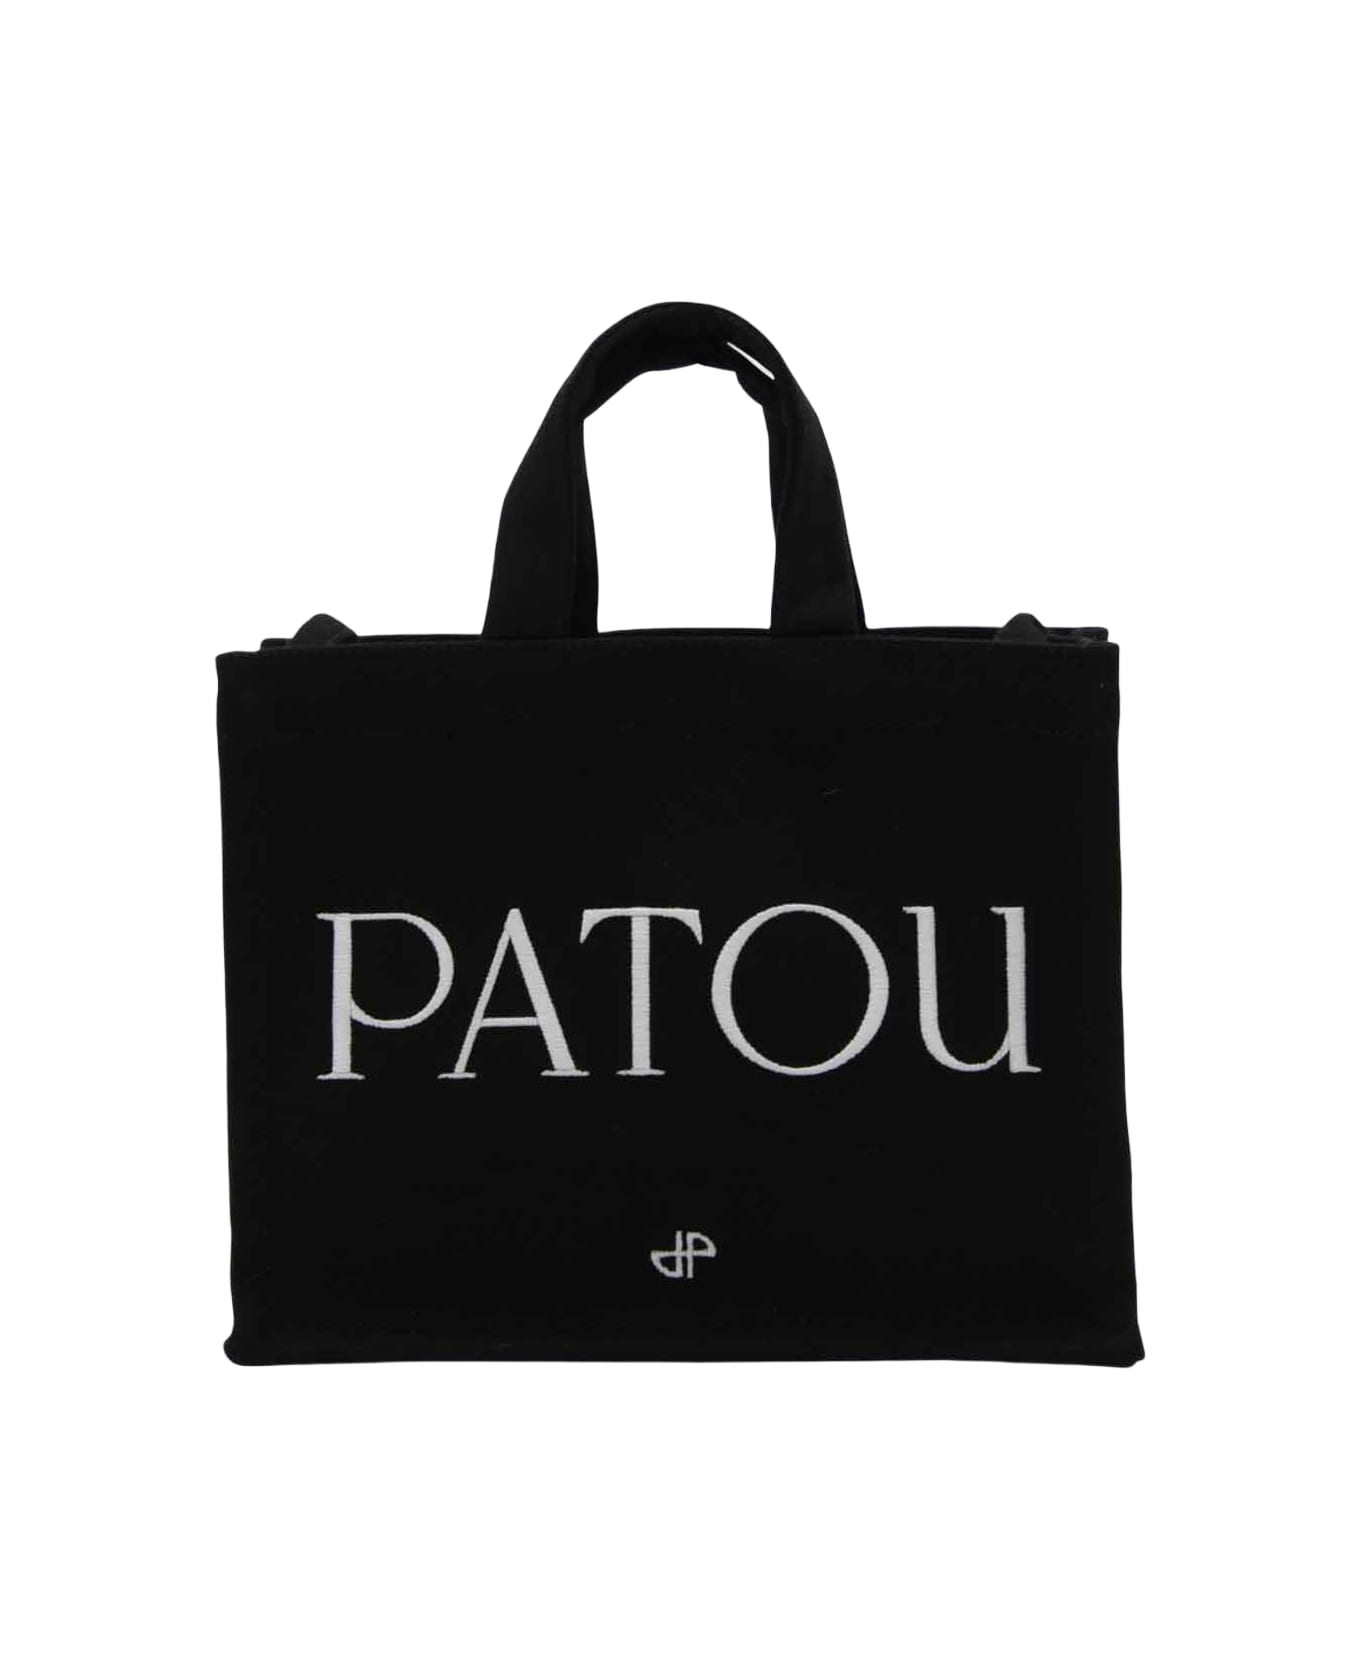 Patou Black Cotton Small Tote Bag - Black